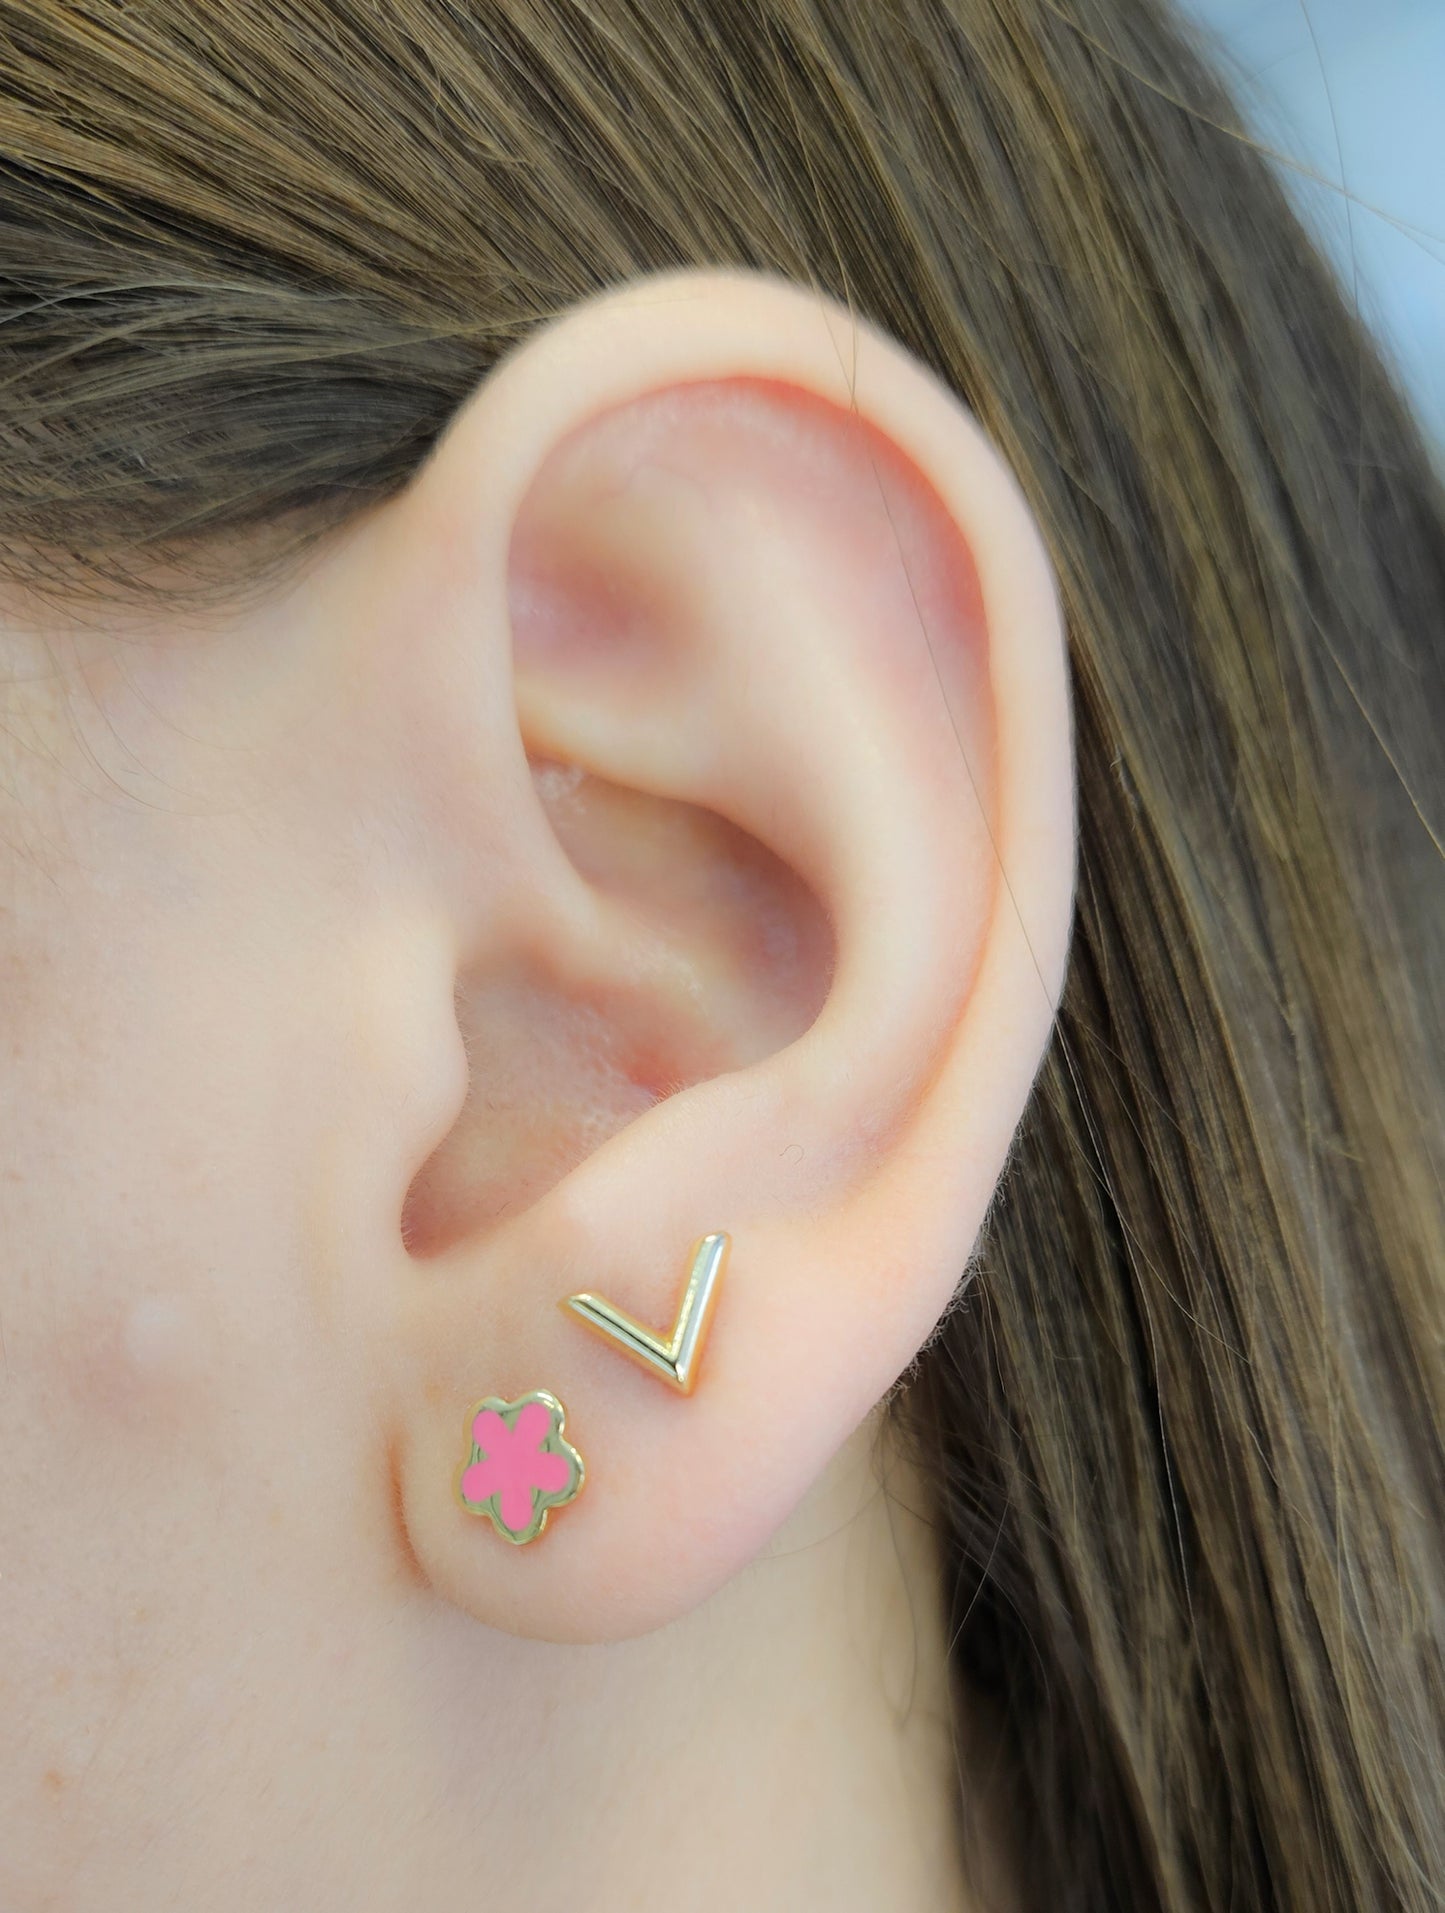 Pink Flower Enamel Earrings